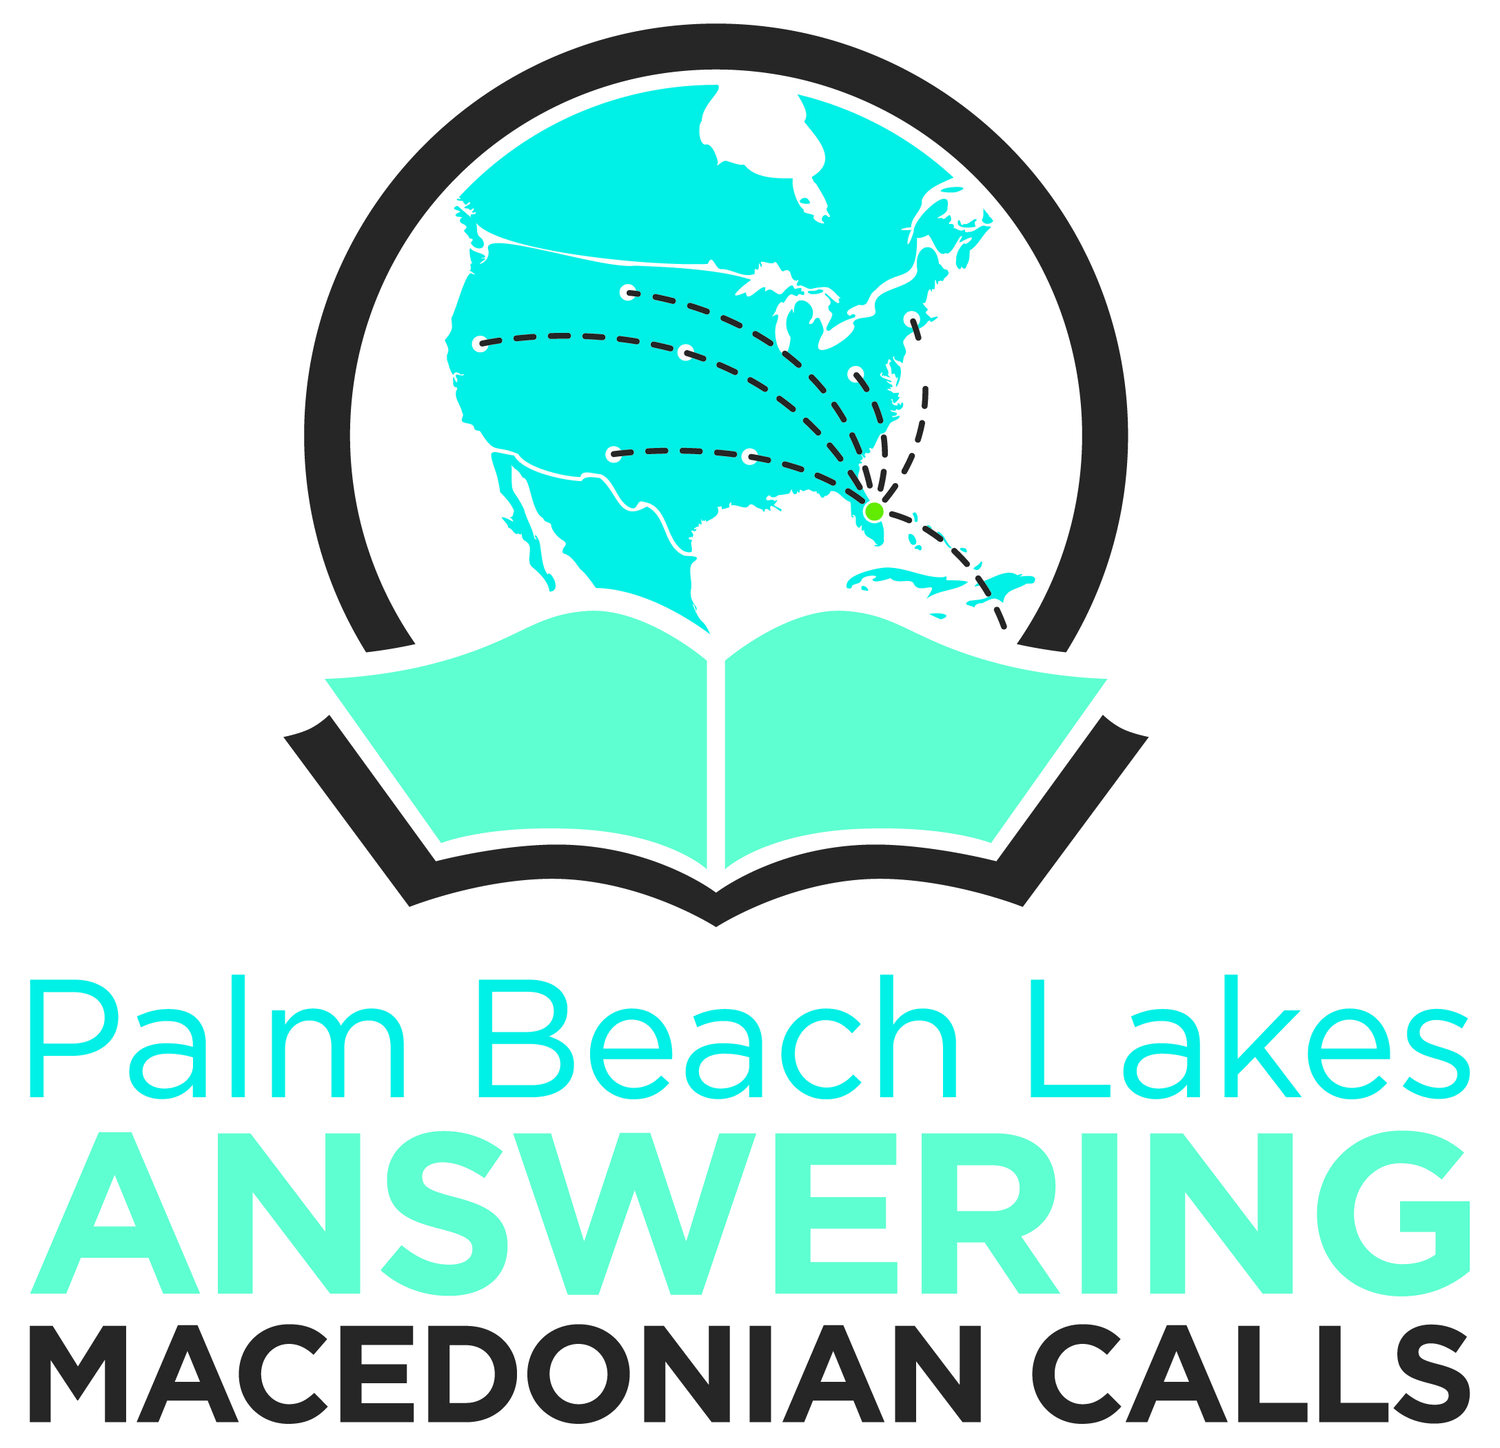 Answering Macedonian Calls